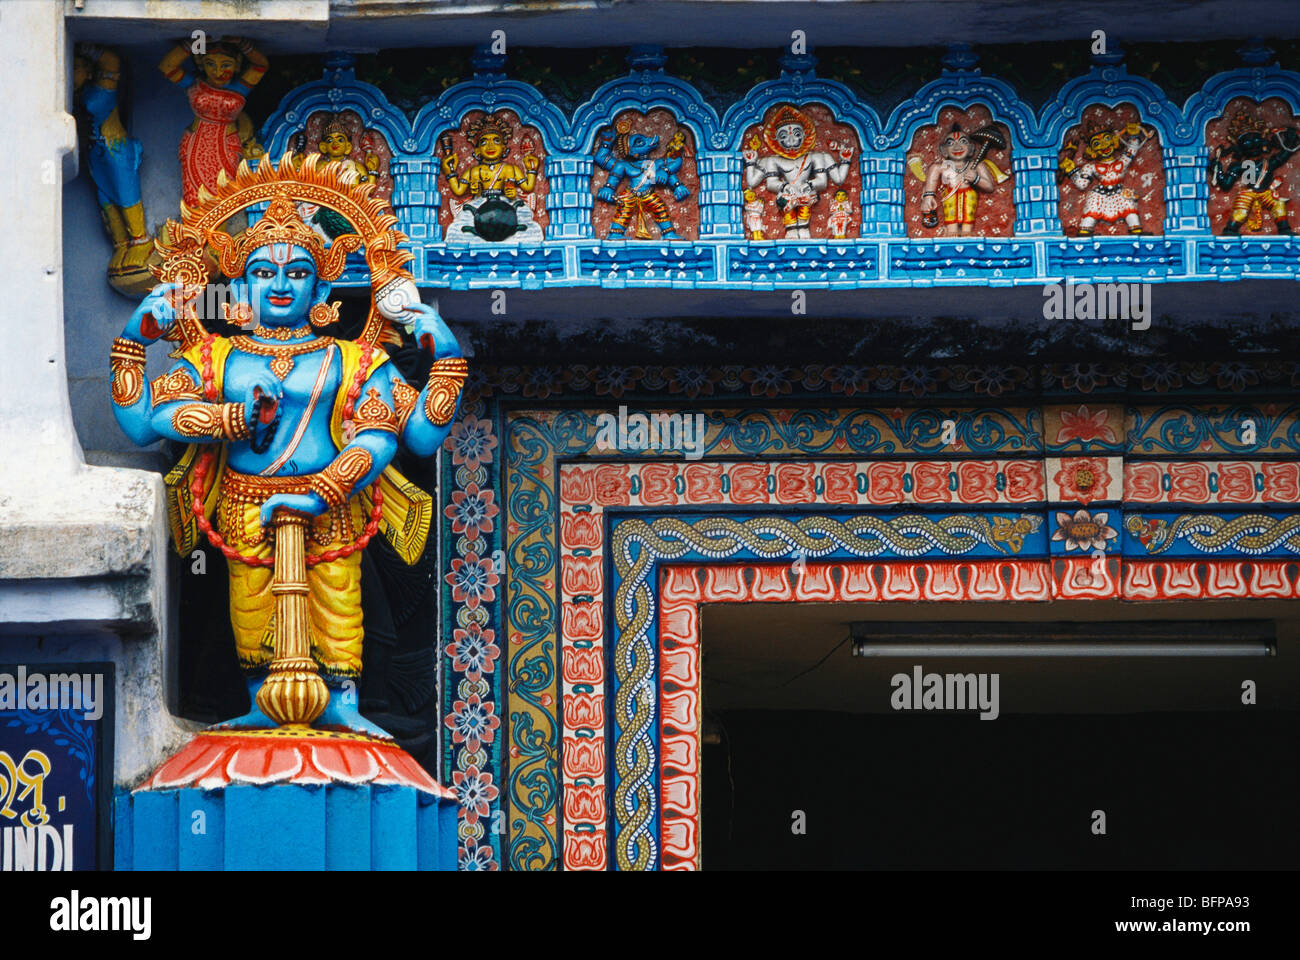 AAD 65470 : Lord Jagannath Puri temple ; Orissa ; India Stock Photo